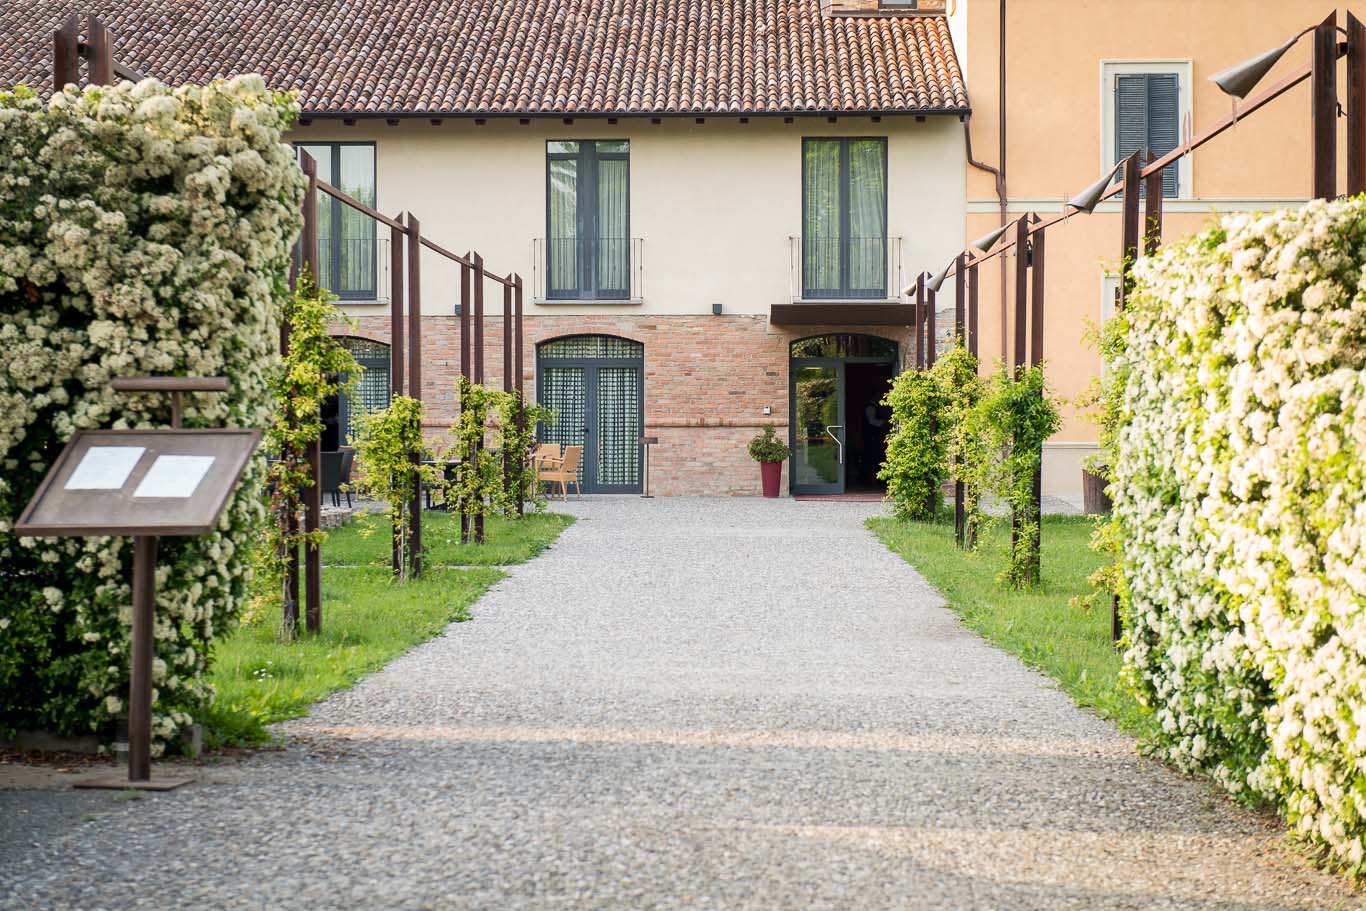 Hotel Ristorante Villa Giarona - viale d'accesso pedonale